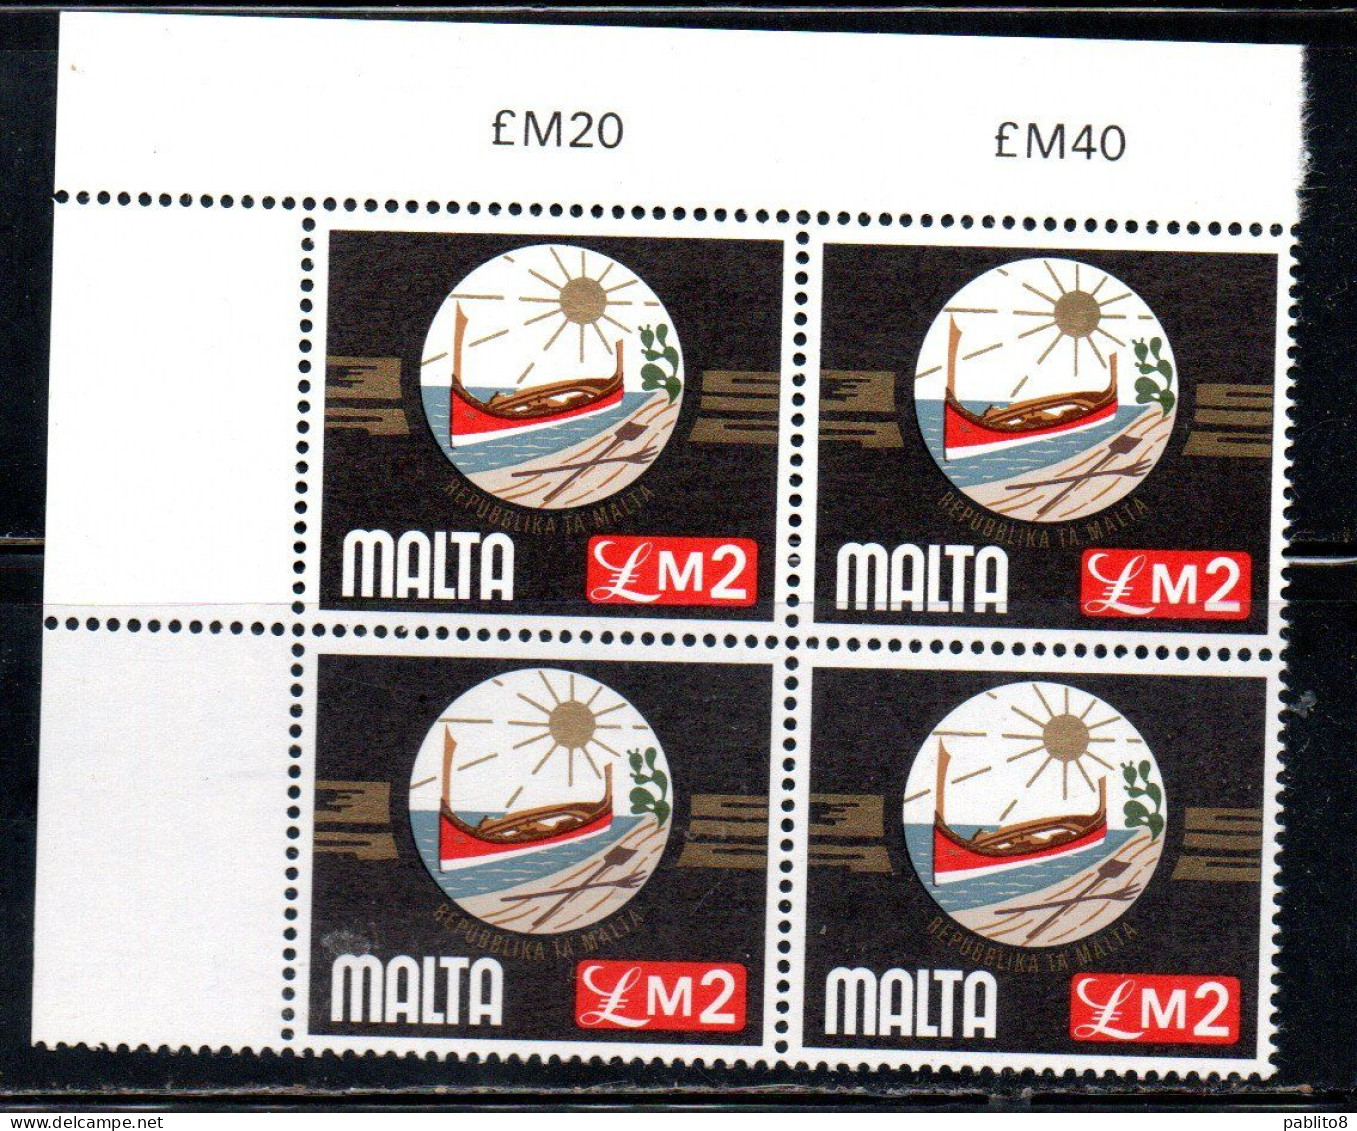 MALTA 1976 COAT OF ARMS OF REPUBLIC STEMMA DELLA REPUBBLICA ARMOIRIES £ 2 BLOCK QUARTINA MNH - Malta